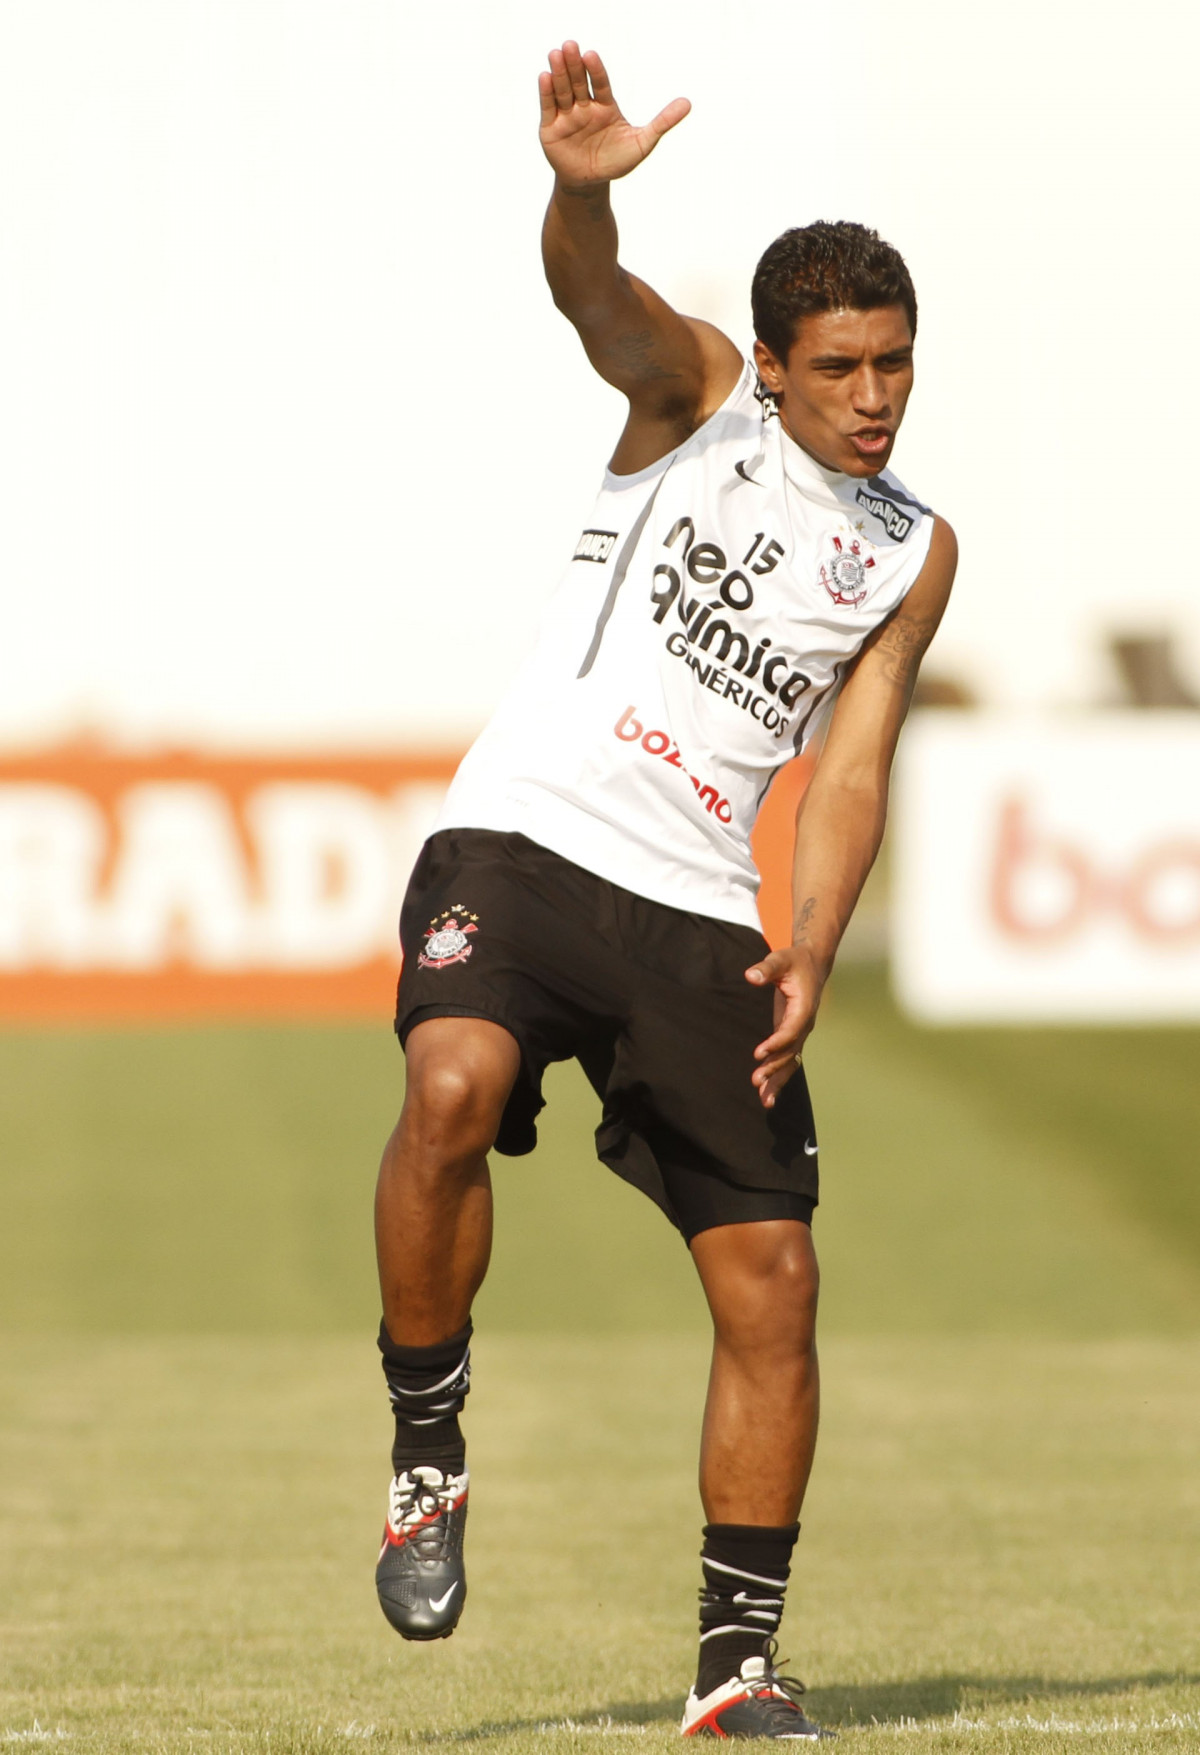 Paulinho durante Treino do Corinthians realizado no Centro de treinamento joaquim Grava